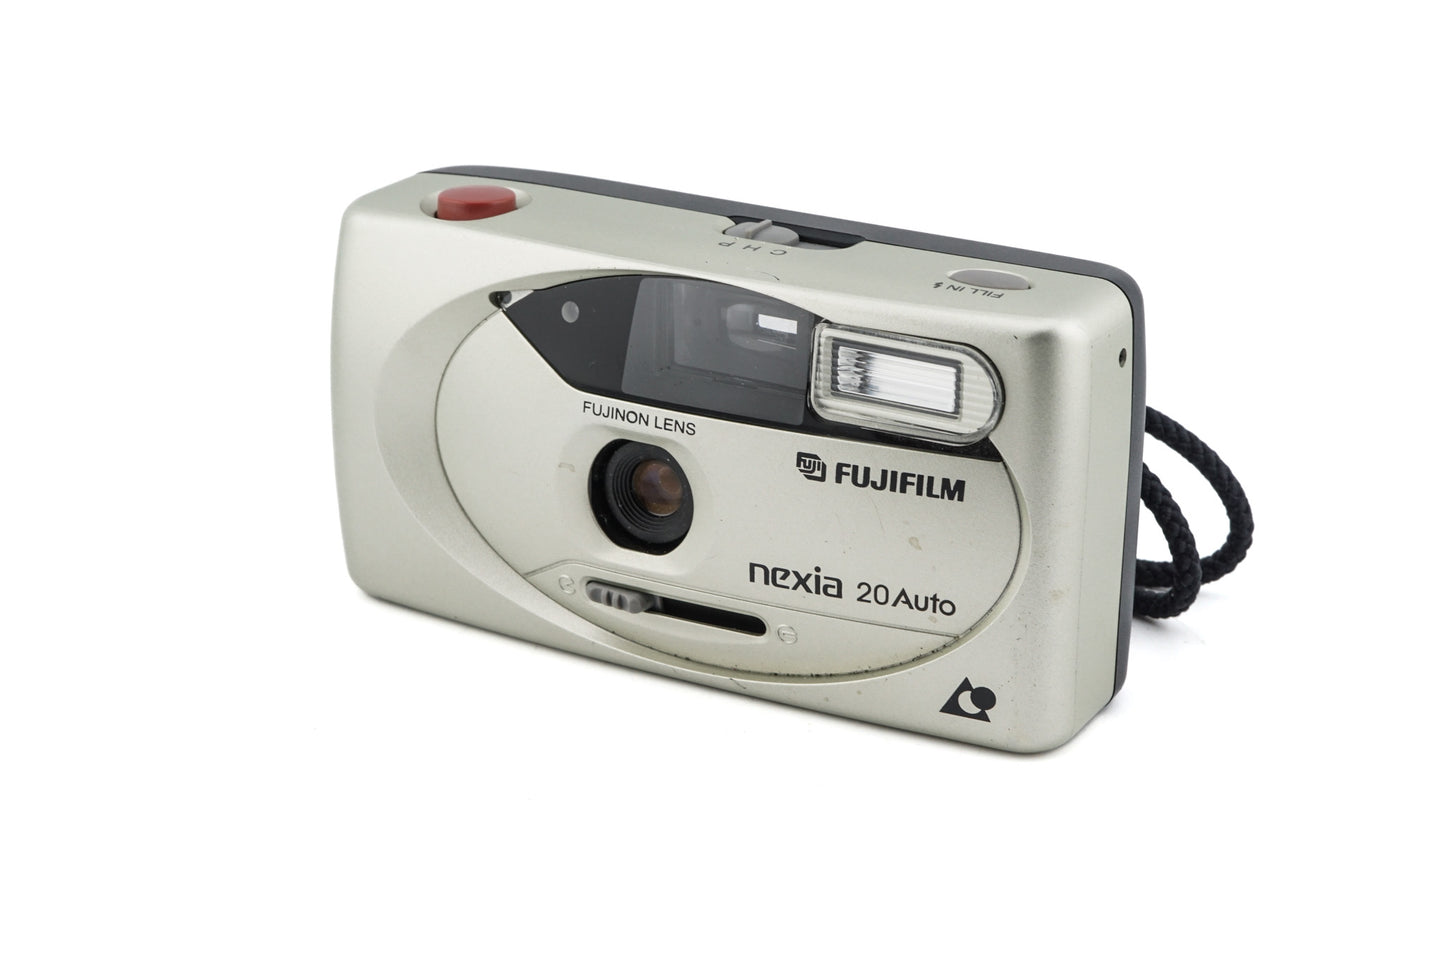 Fujifilm Nexia 20 Auto